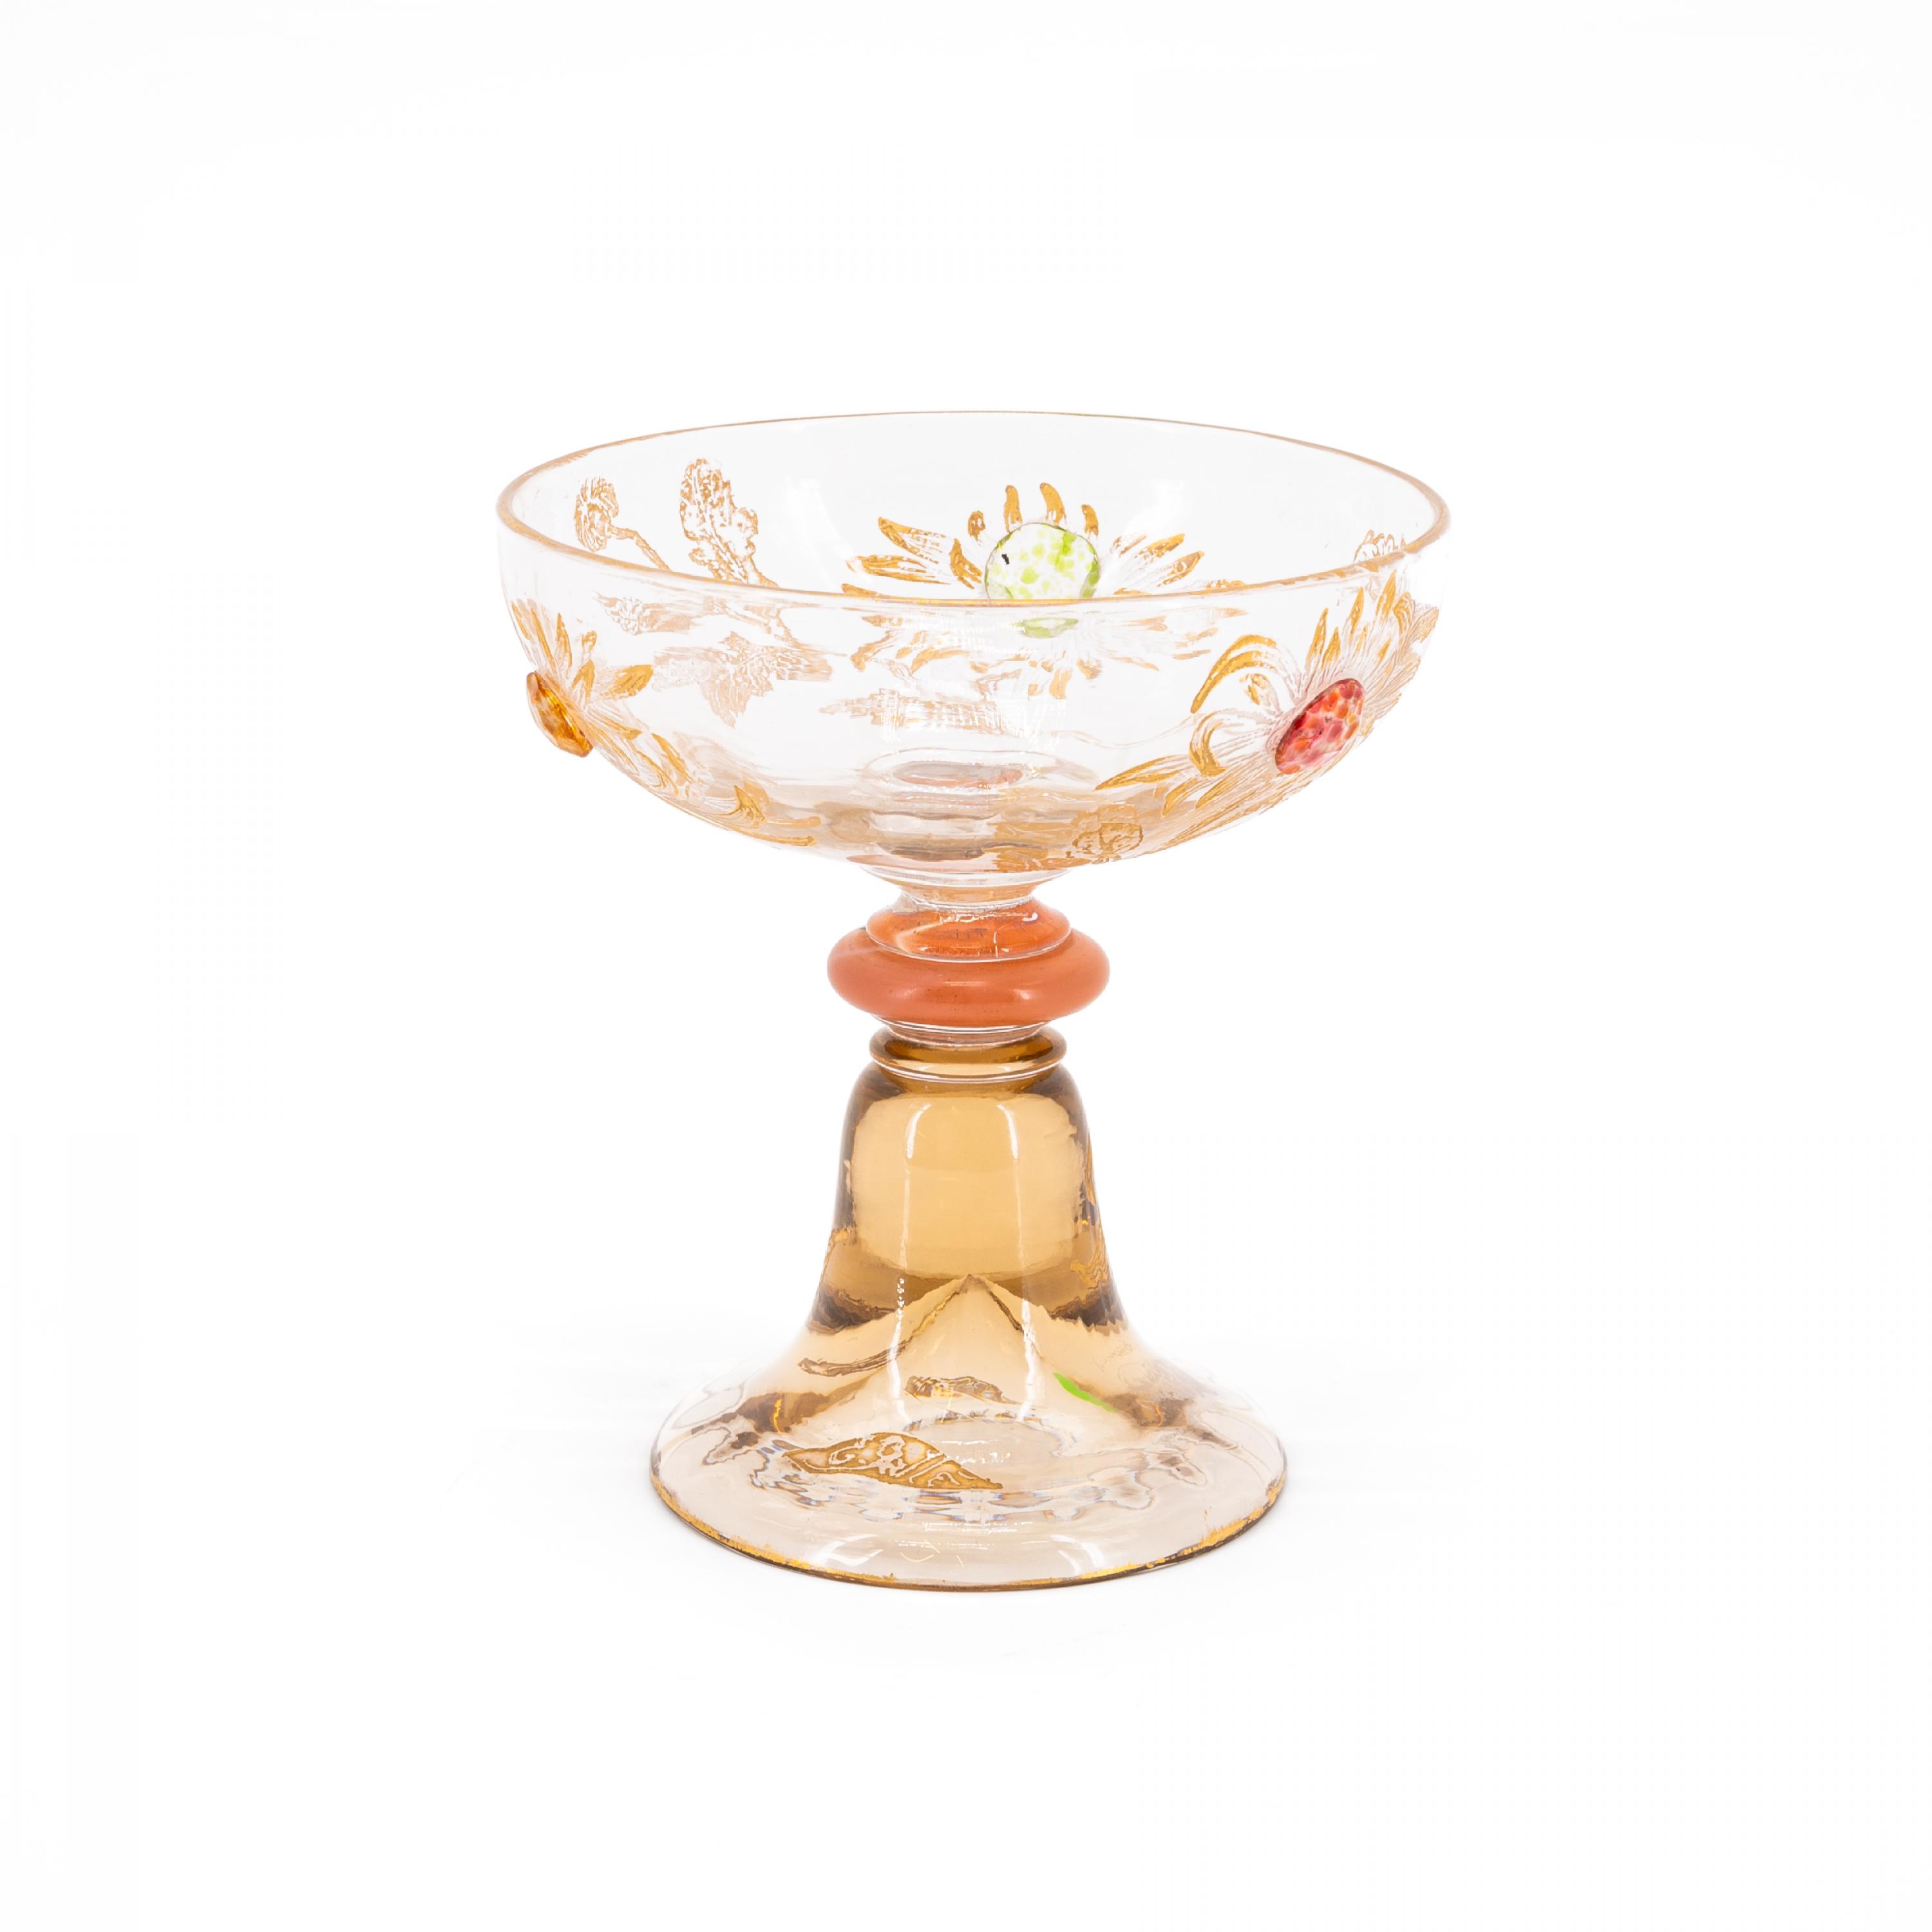 Emile Galle - Champagnerglas mit aufgelegten Glassteinen und Chrysanthemen, 79189-3, Van Ham Kunstauktionen